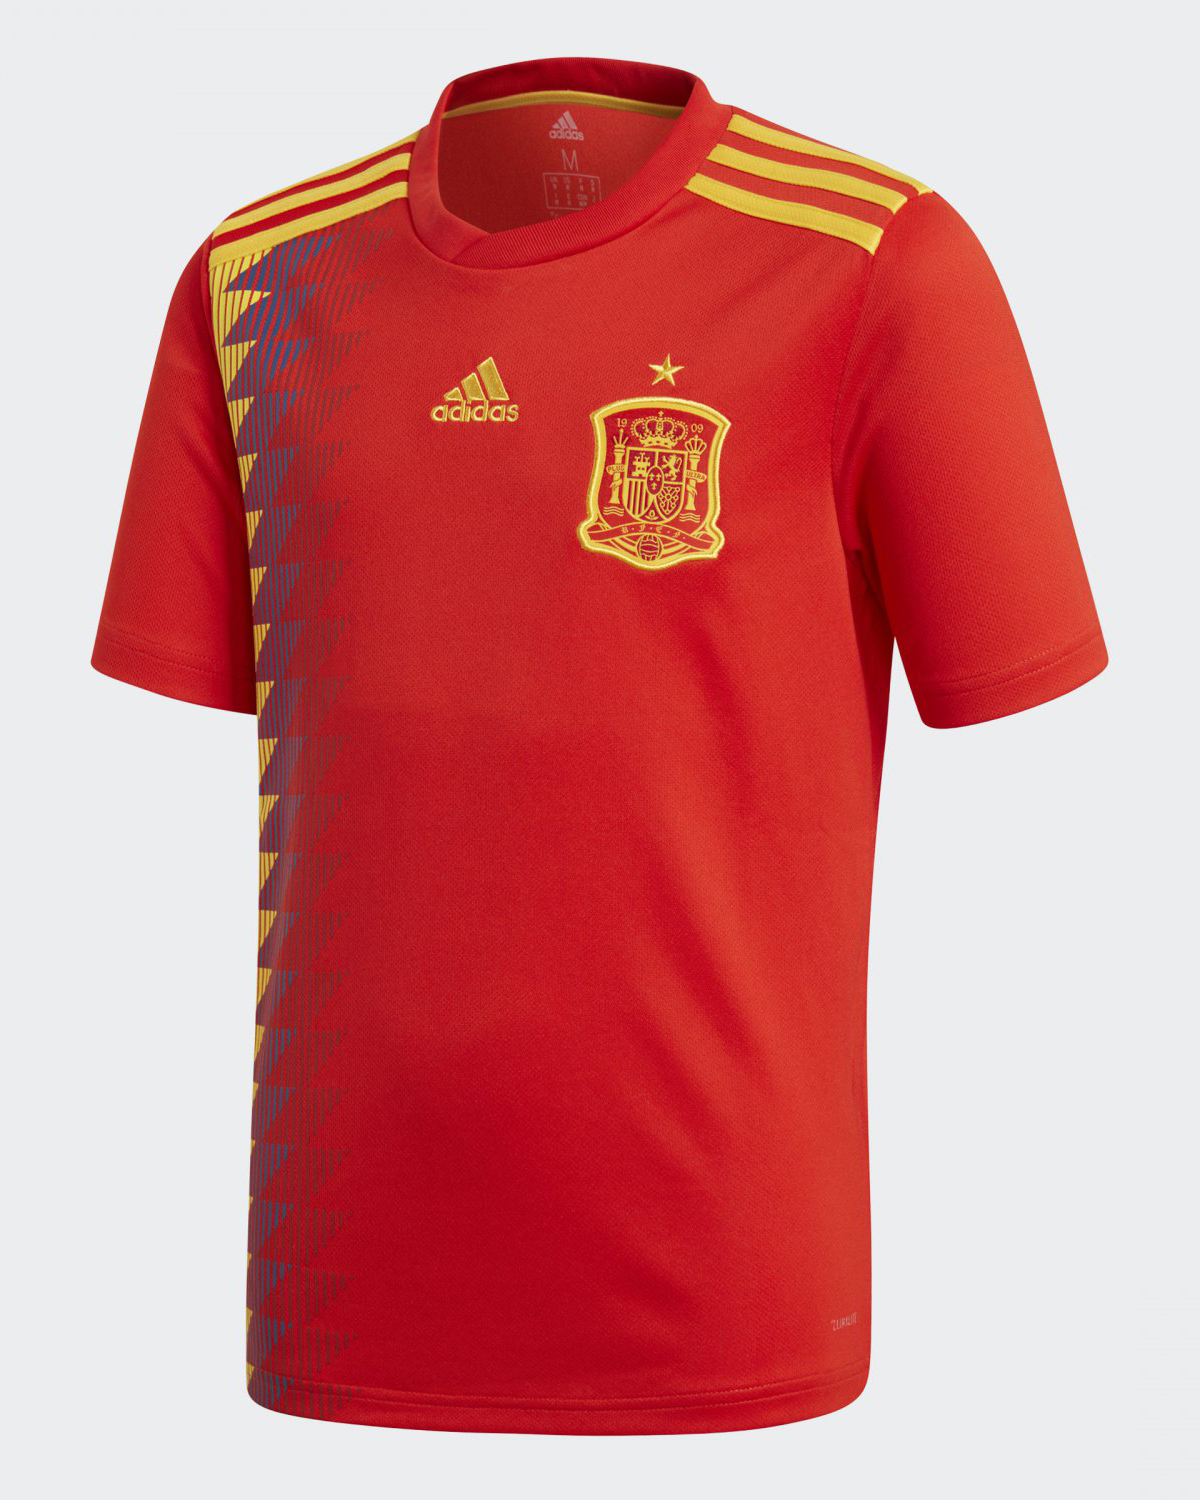 Camiseta adidas de España Mundial 2018 - Marca de Gol